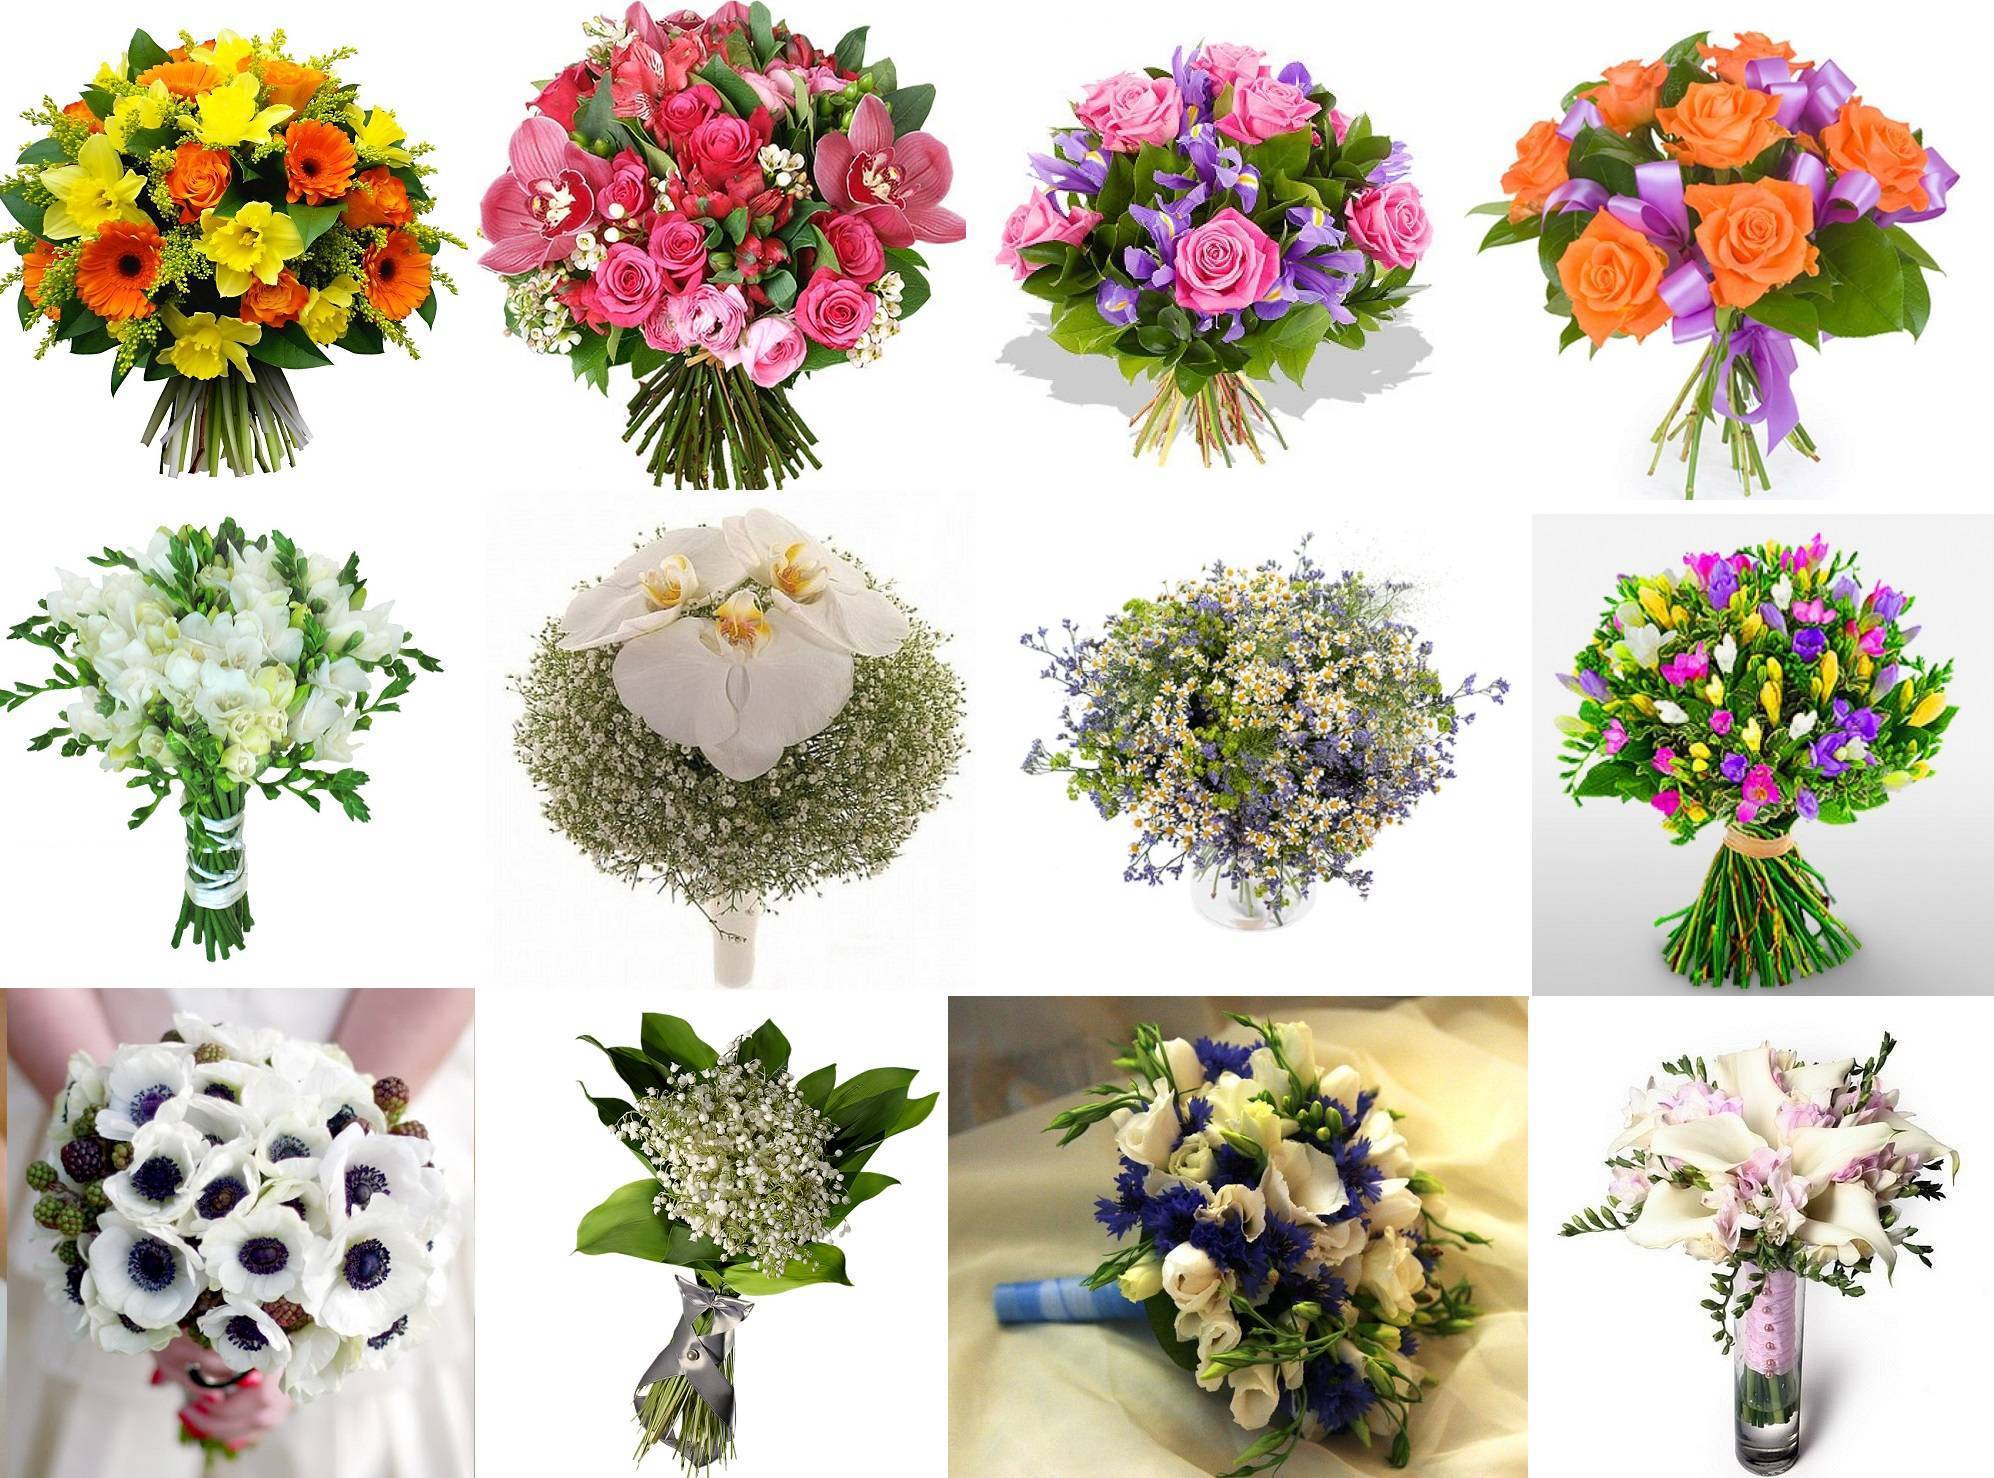 Какие цветы подарить девушке: какой букет лучше преподнести женщине на день рождения, на 1 свидание по правилам этикета